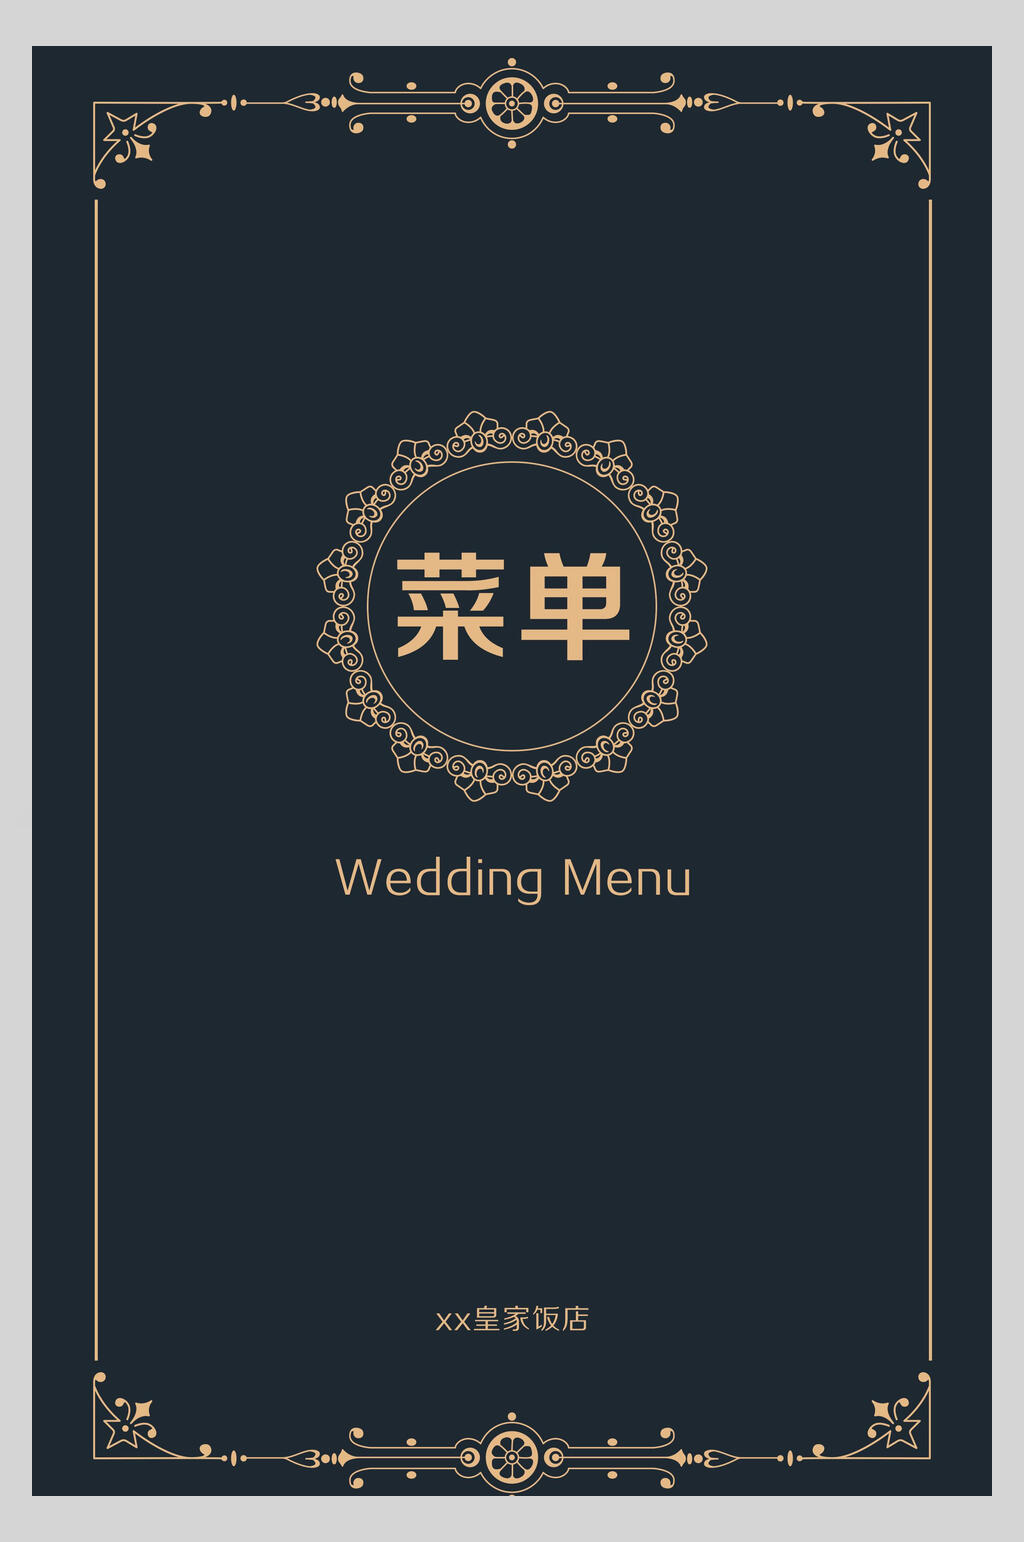 婚宴菜单设计 背景图图片